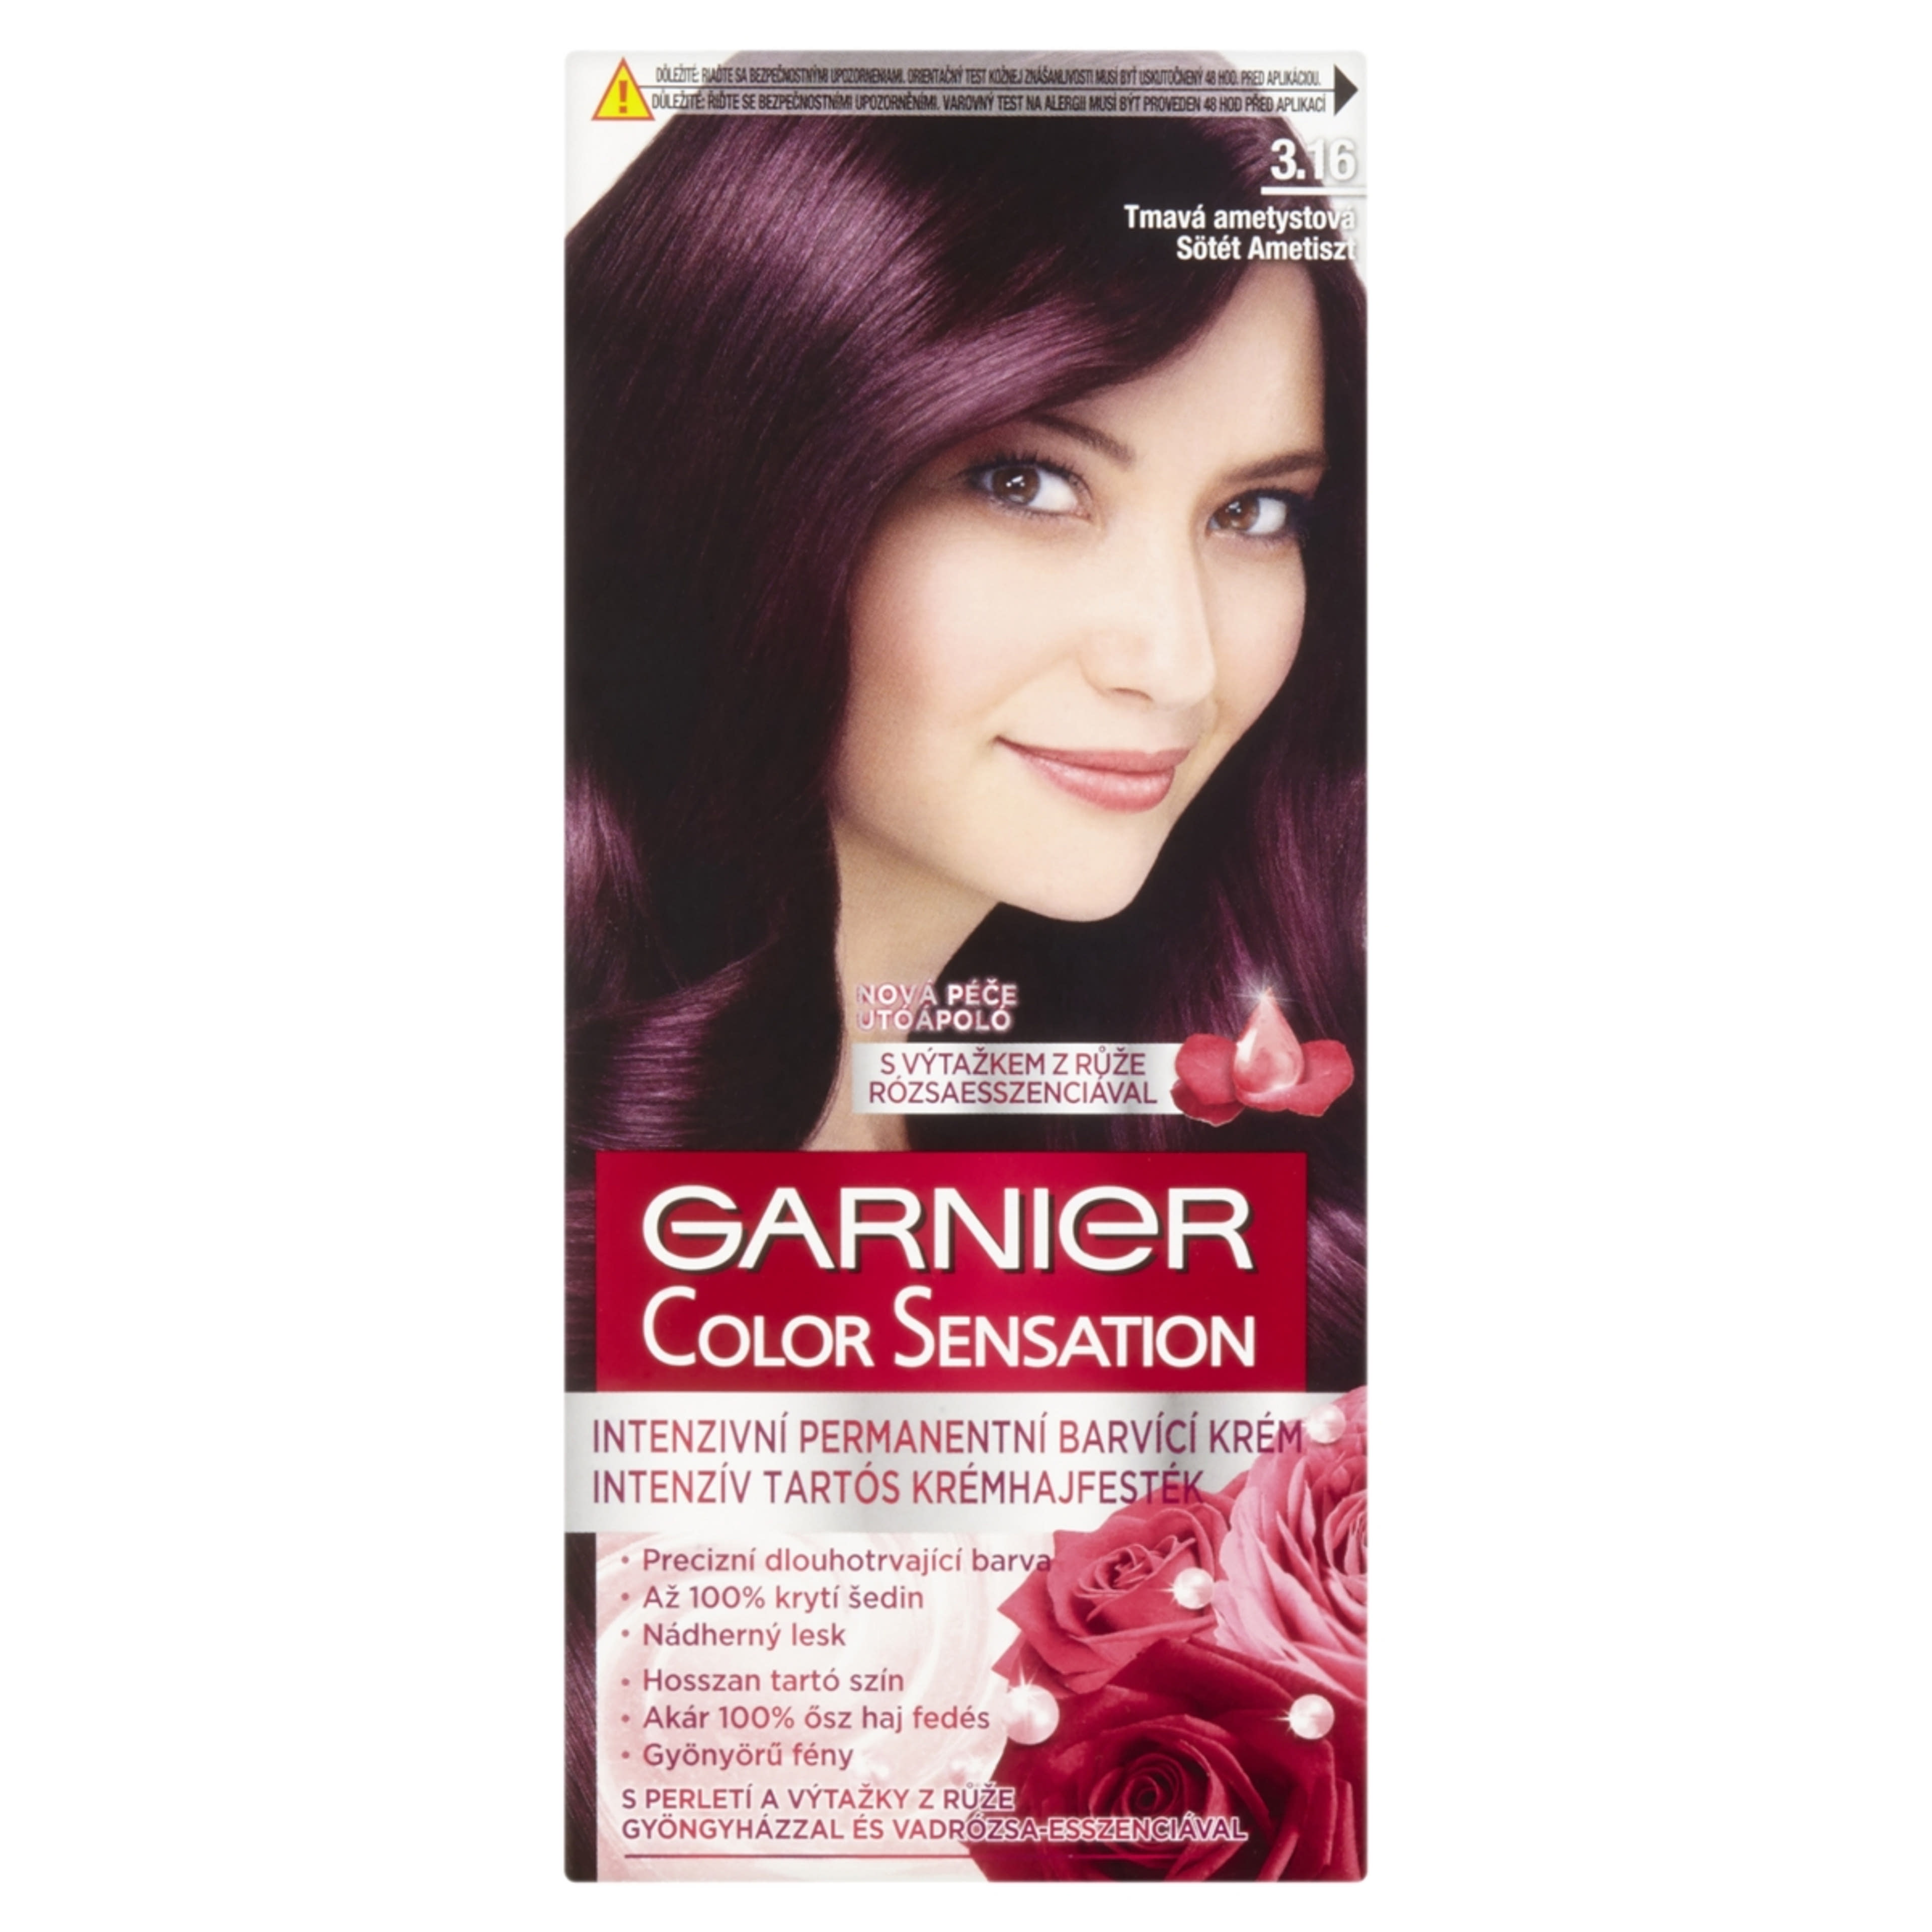 Garnier Color Sensation hajfesték 3.16 Sötét ametiszt - 1 db